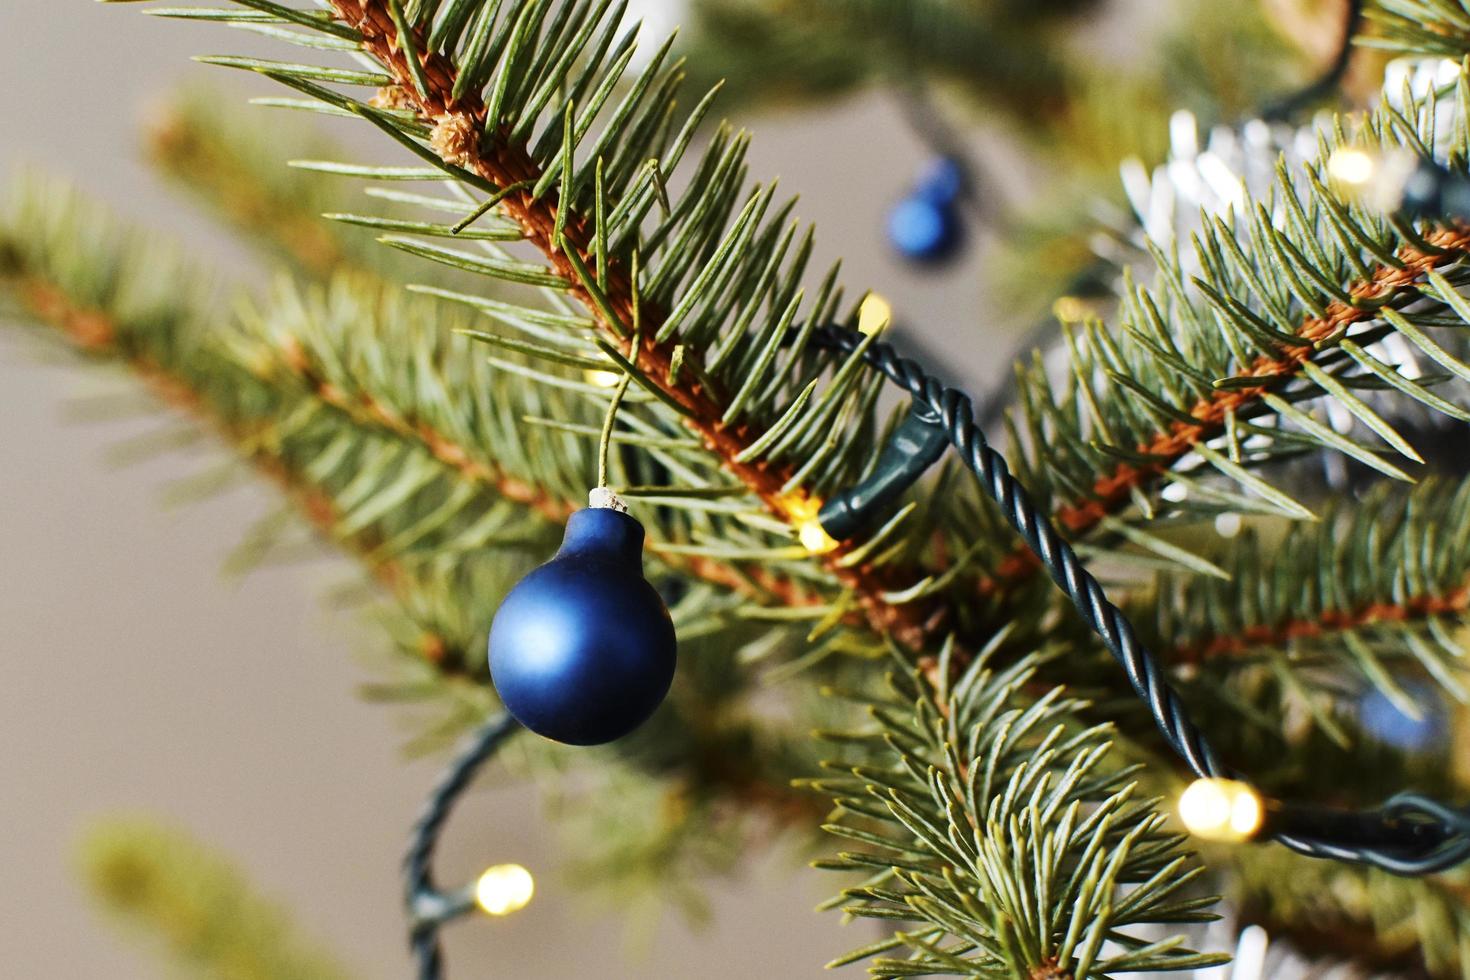 decorações para árvores de natal foto